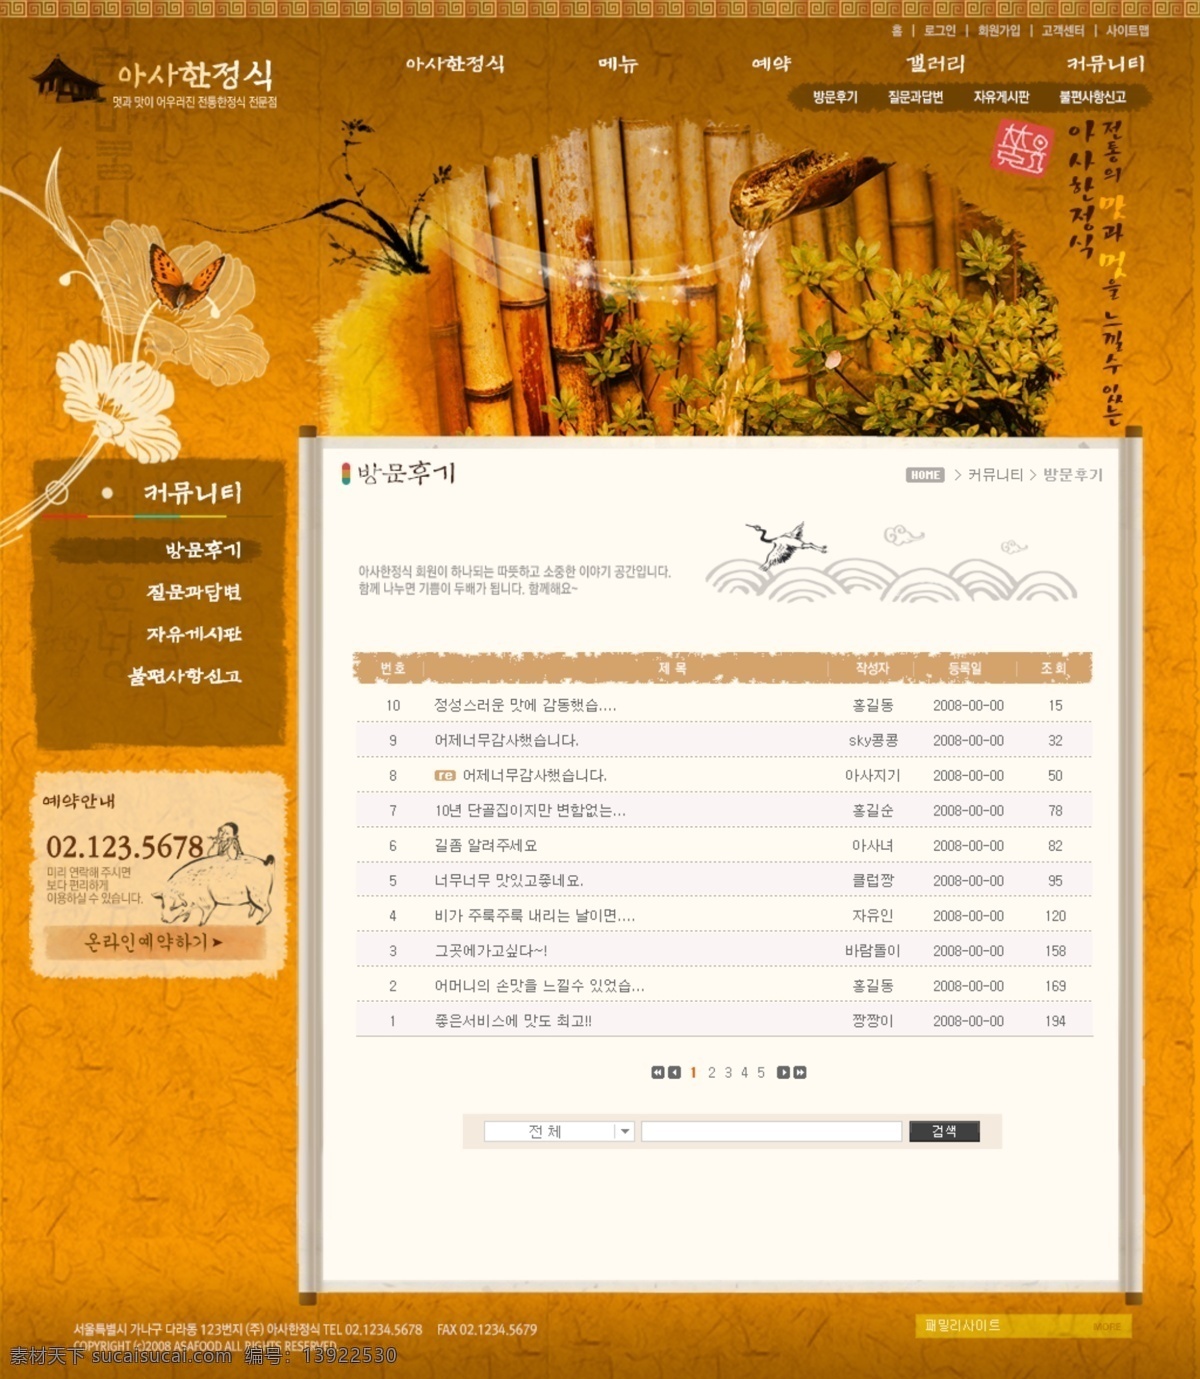 古典 风 网页 古典风 韩国模板 韩国网页 网页模板 网站 源文件 古典风网页 网页素材